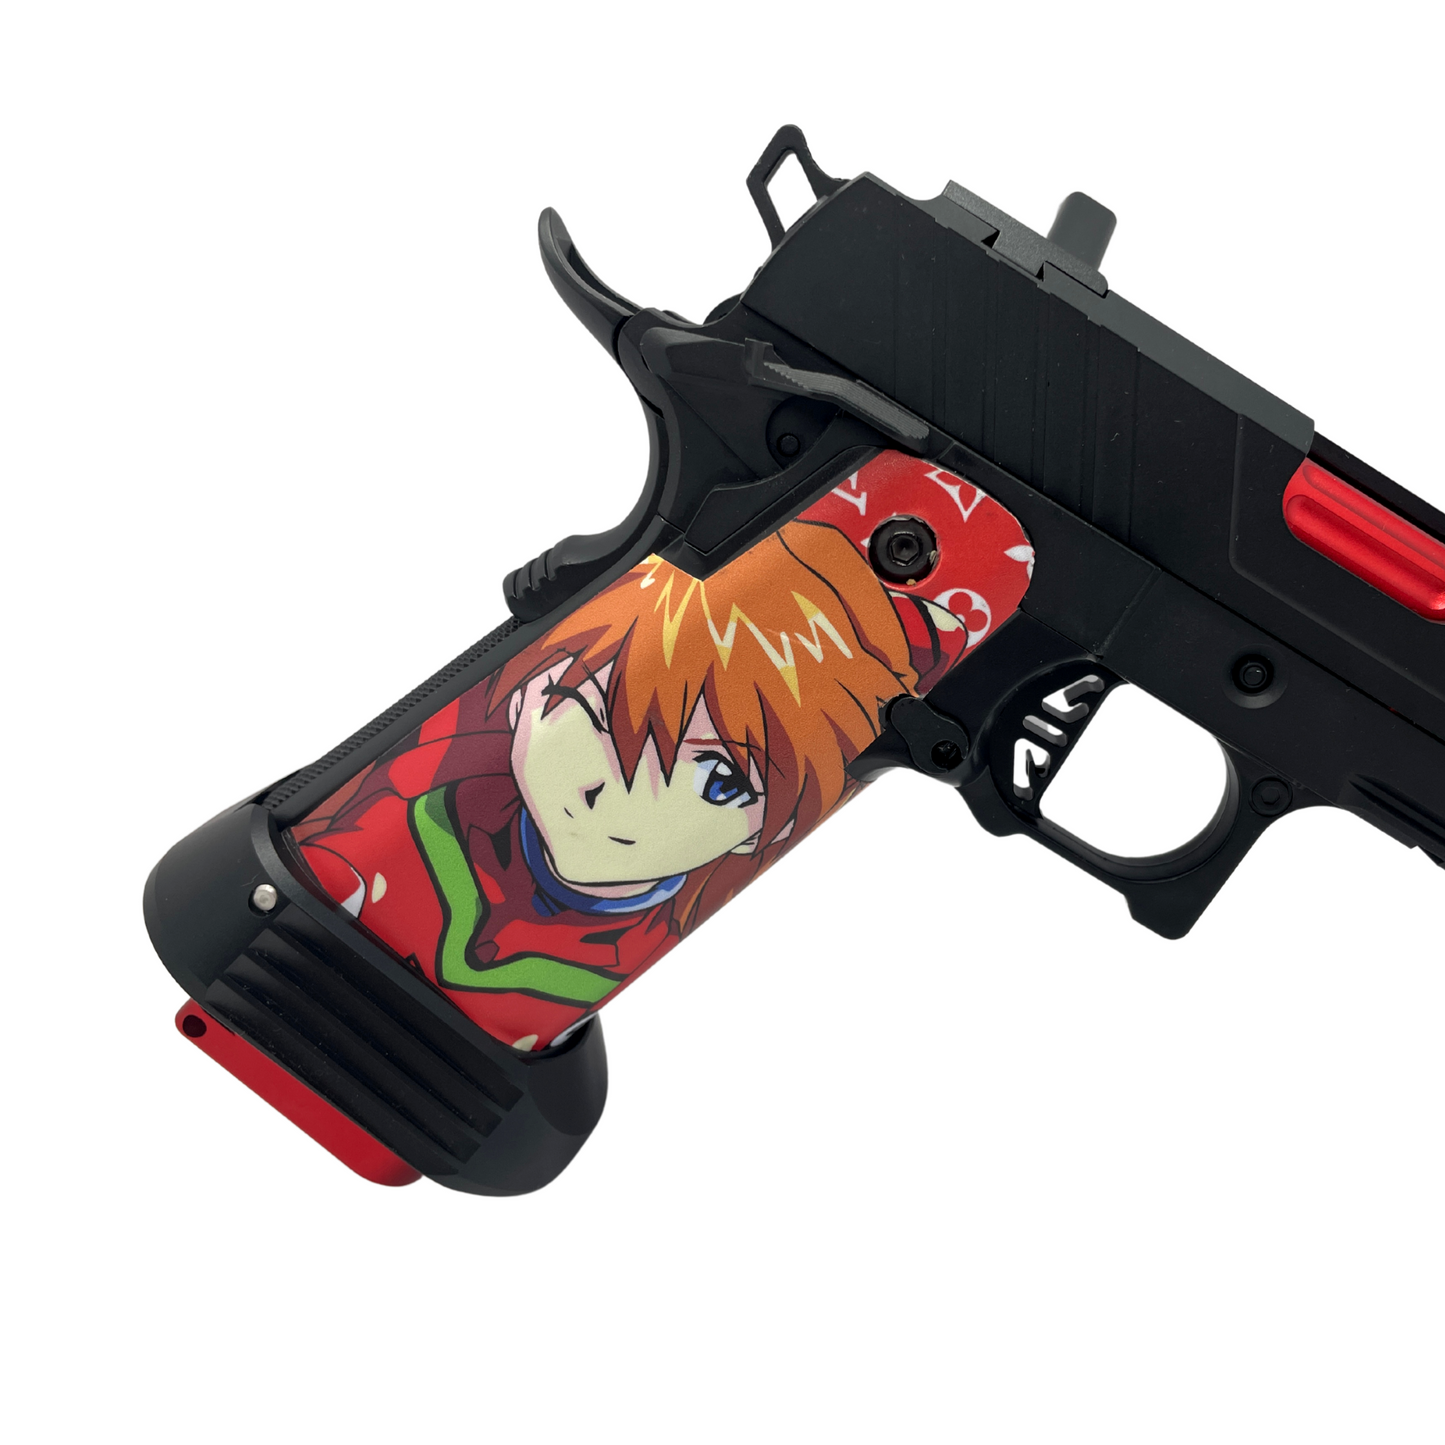 Custom "Anime" G/E 5.1 Hi-Capa Gas Pistol - Gel Blaster